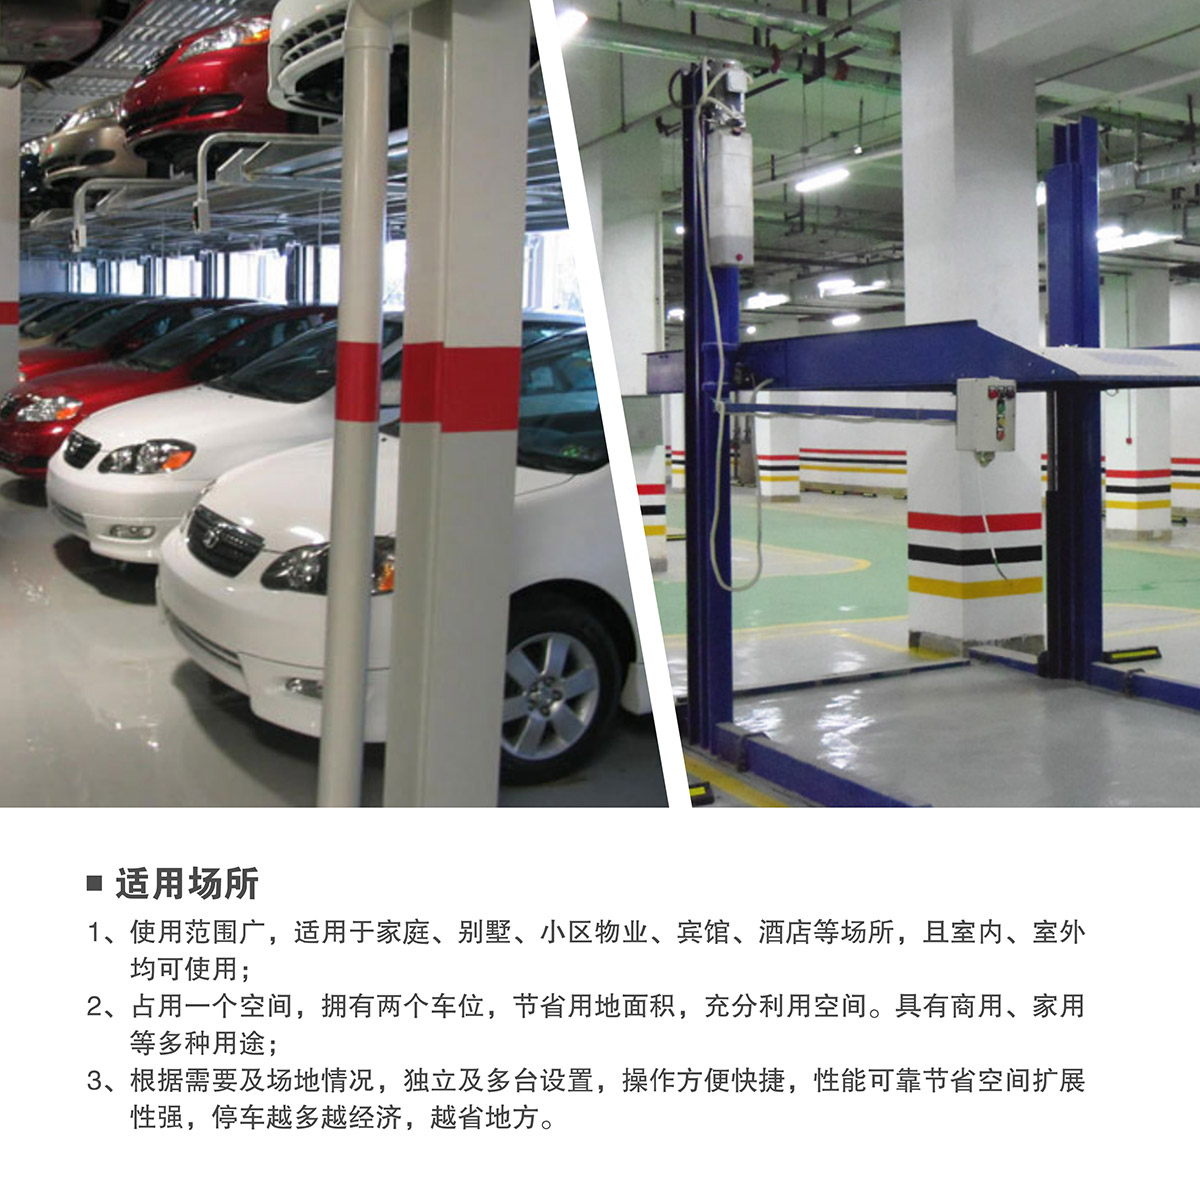 机械车位租赁两柱简易升降机械停车设备适用场所.jpg